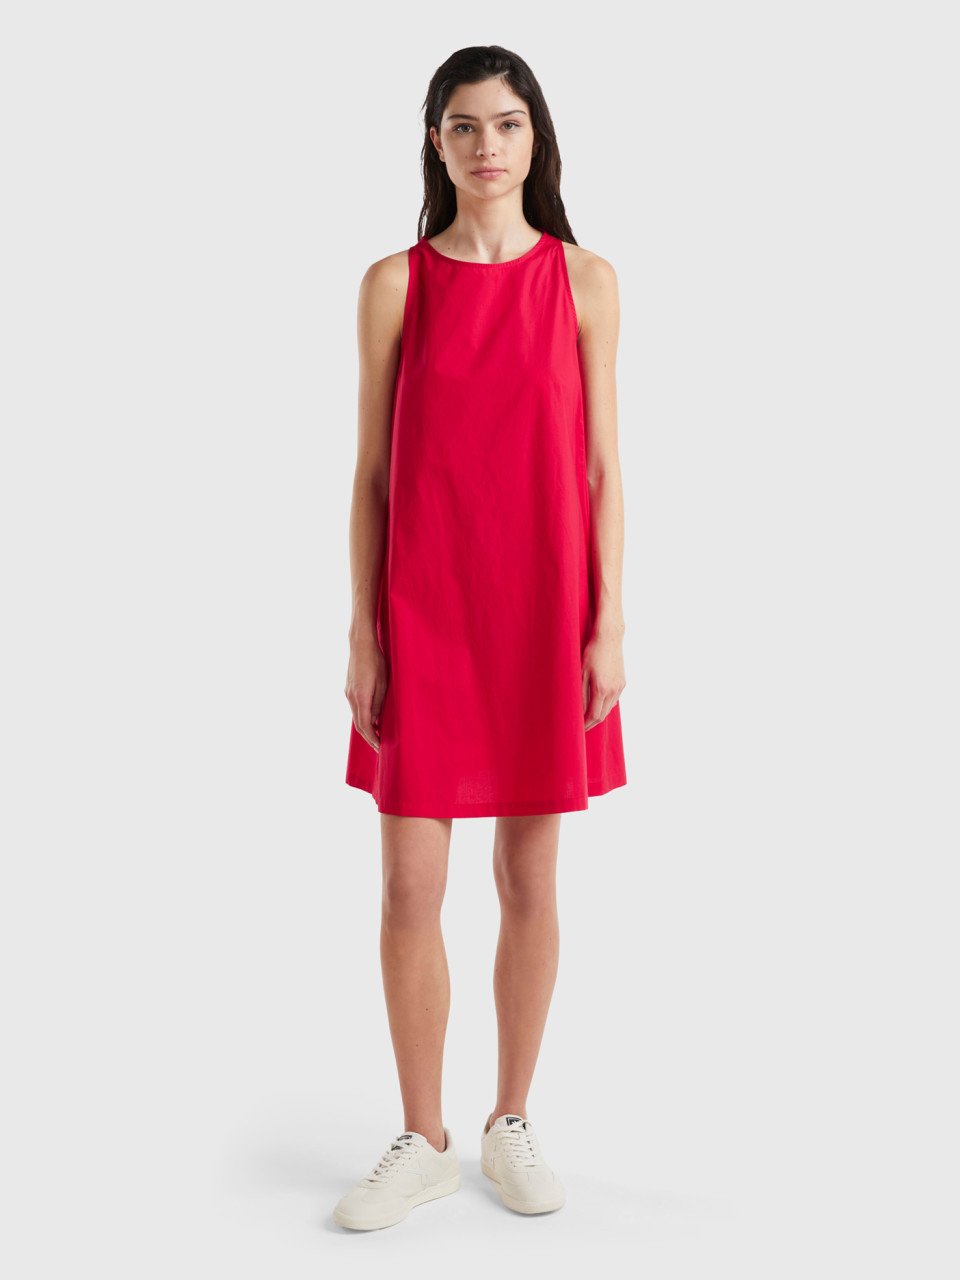 Benetton, Sleeveless Trapeze Dress, Red, Women